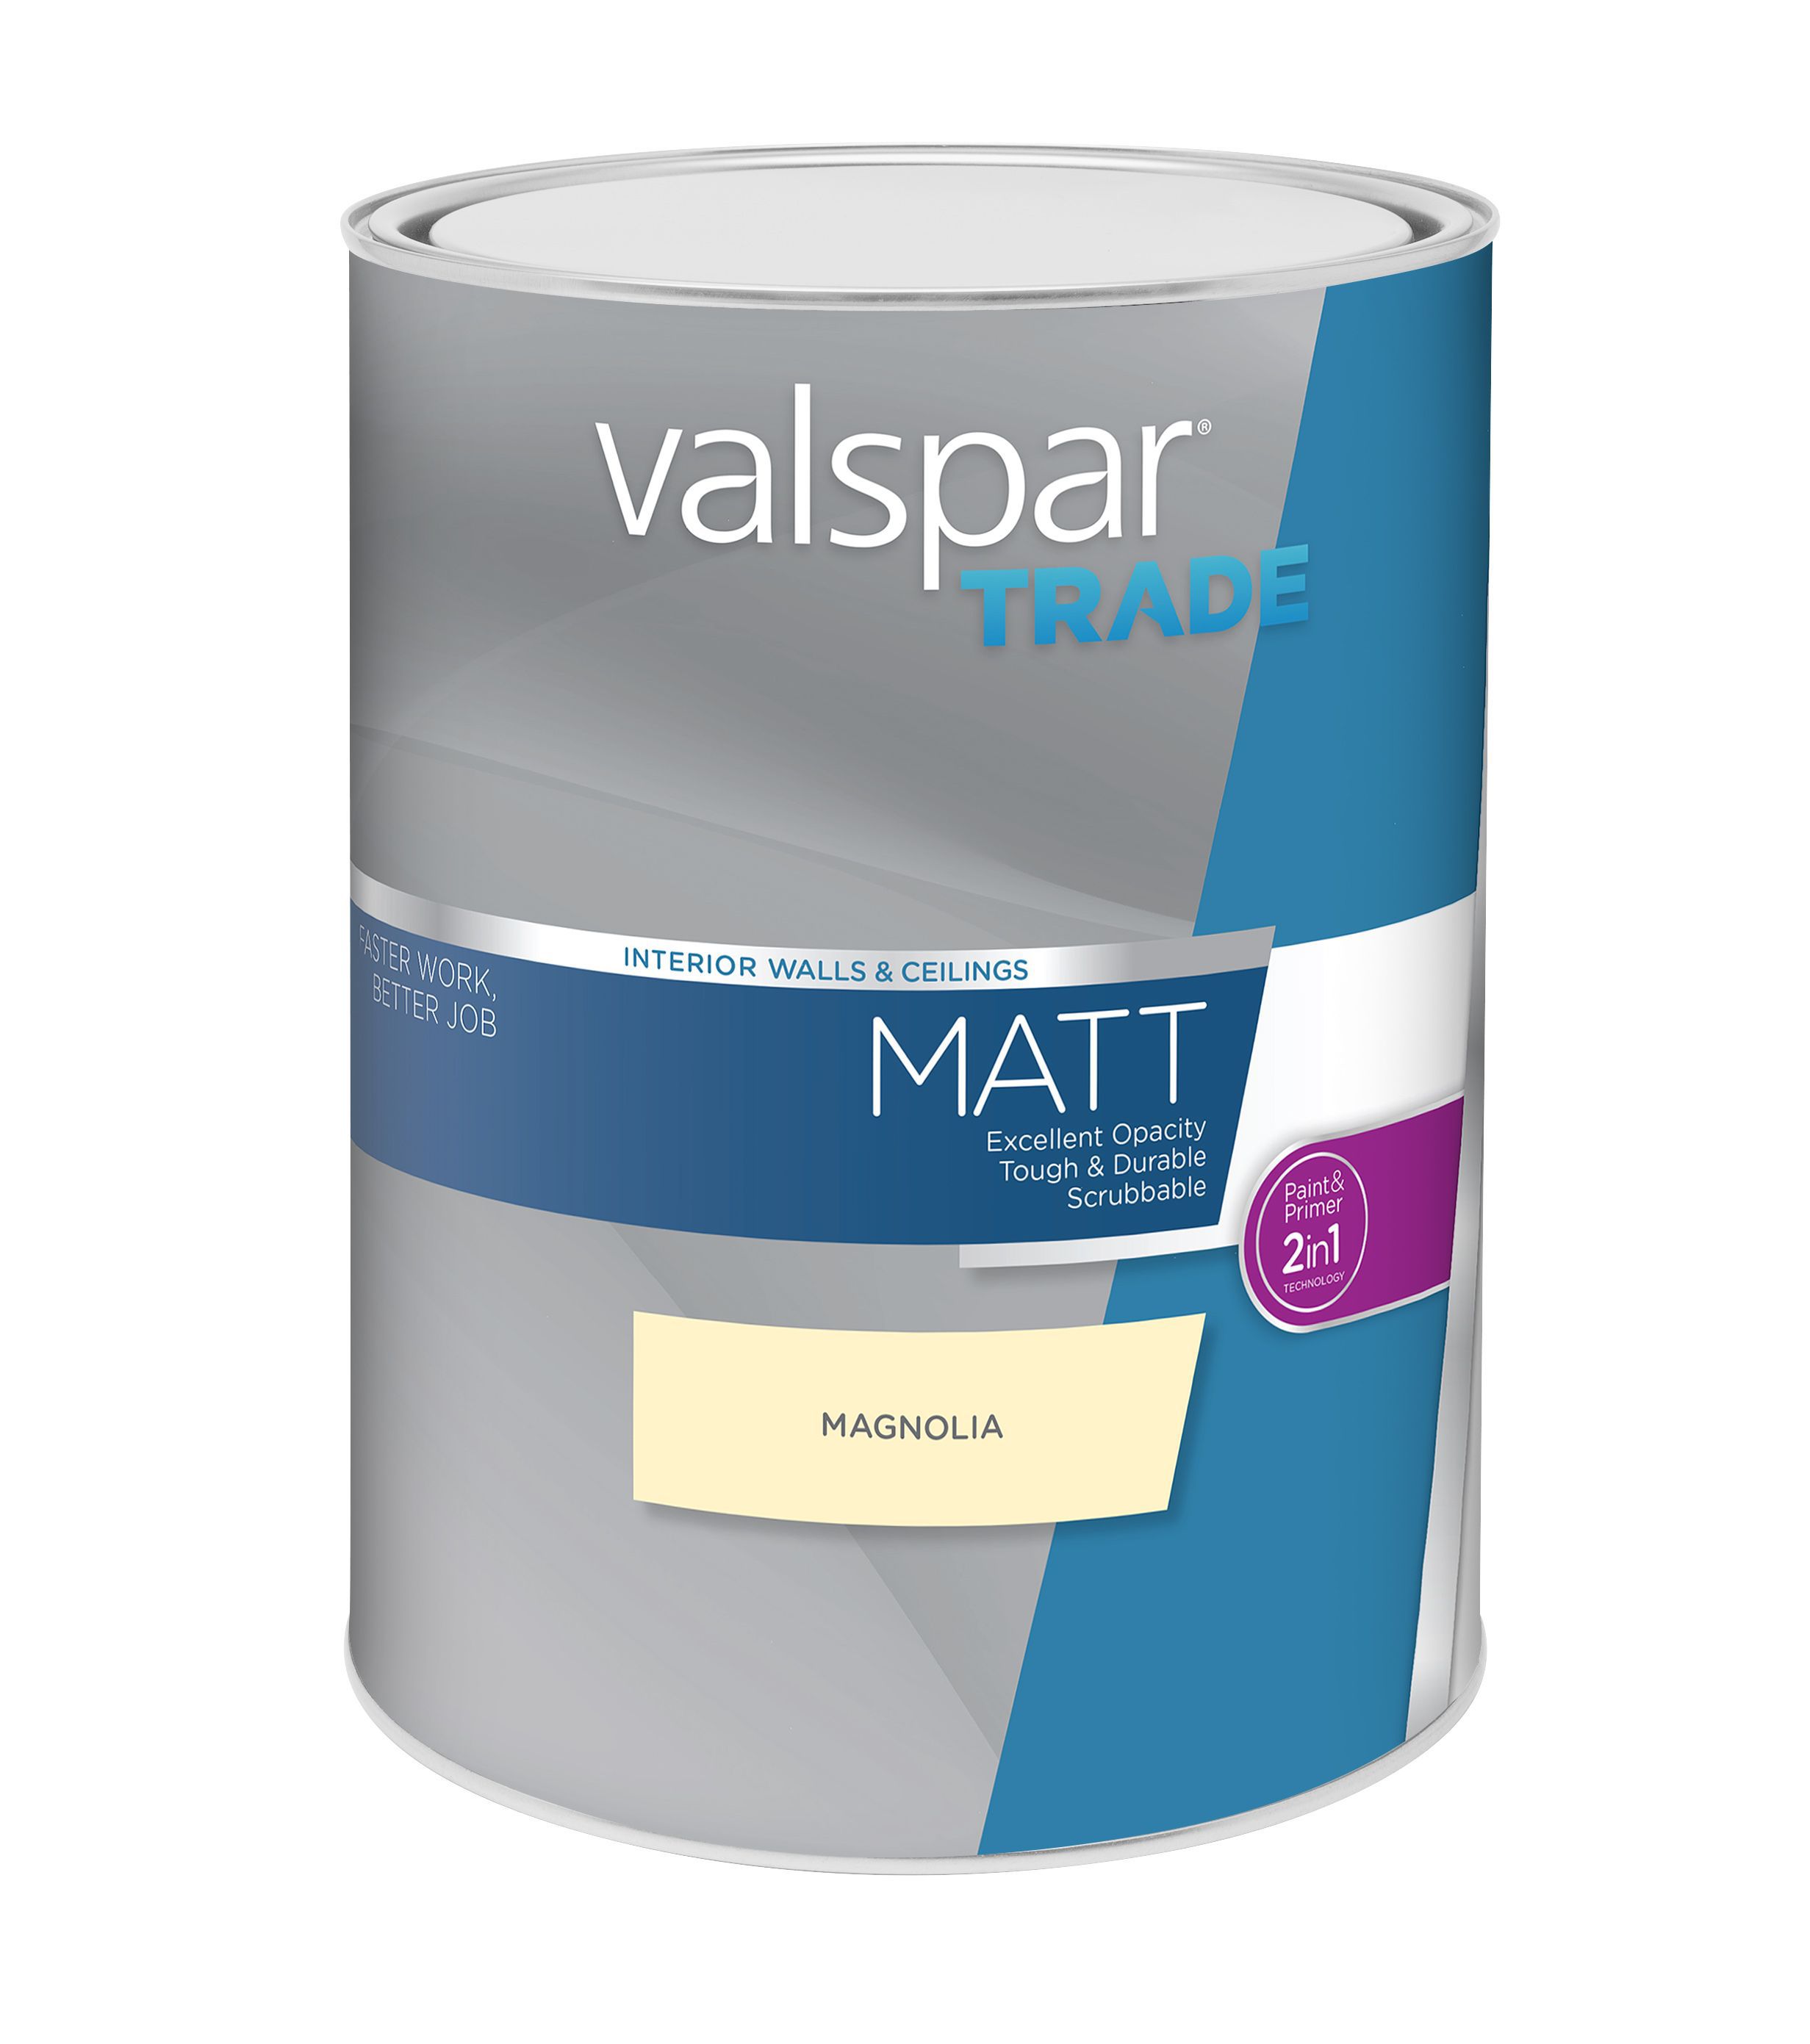 Valspar Trade Magnolia Matt Emulsion paint, 5L